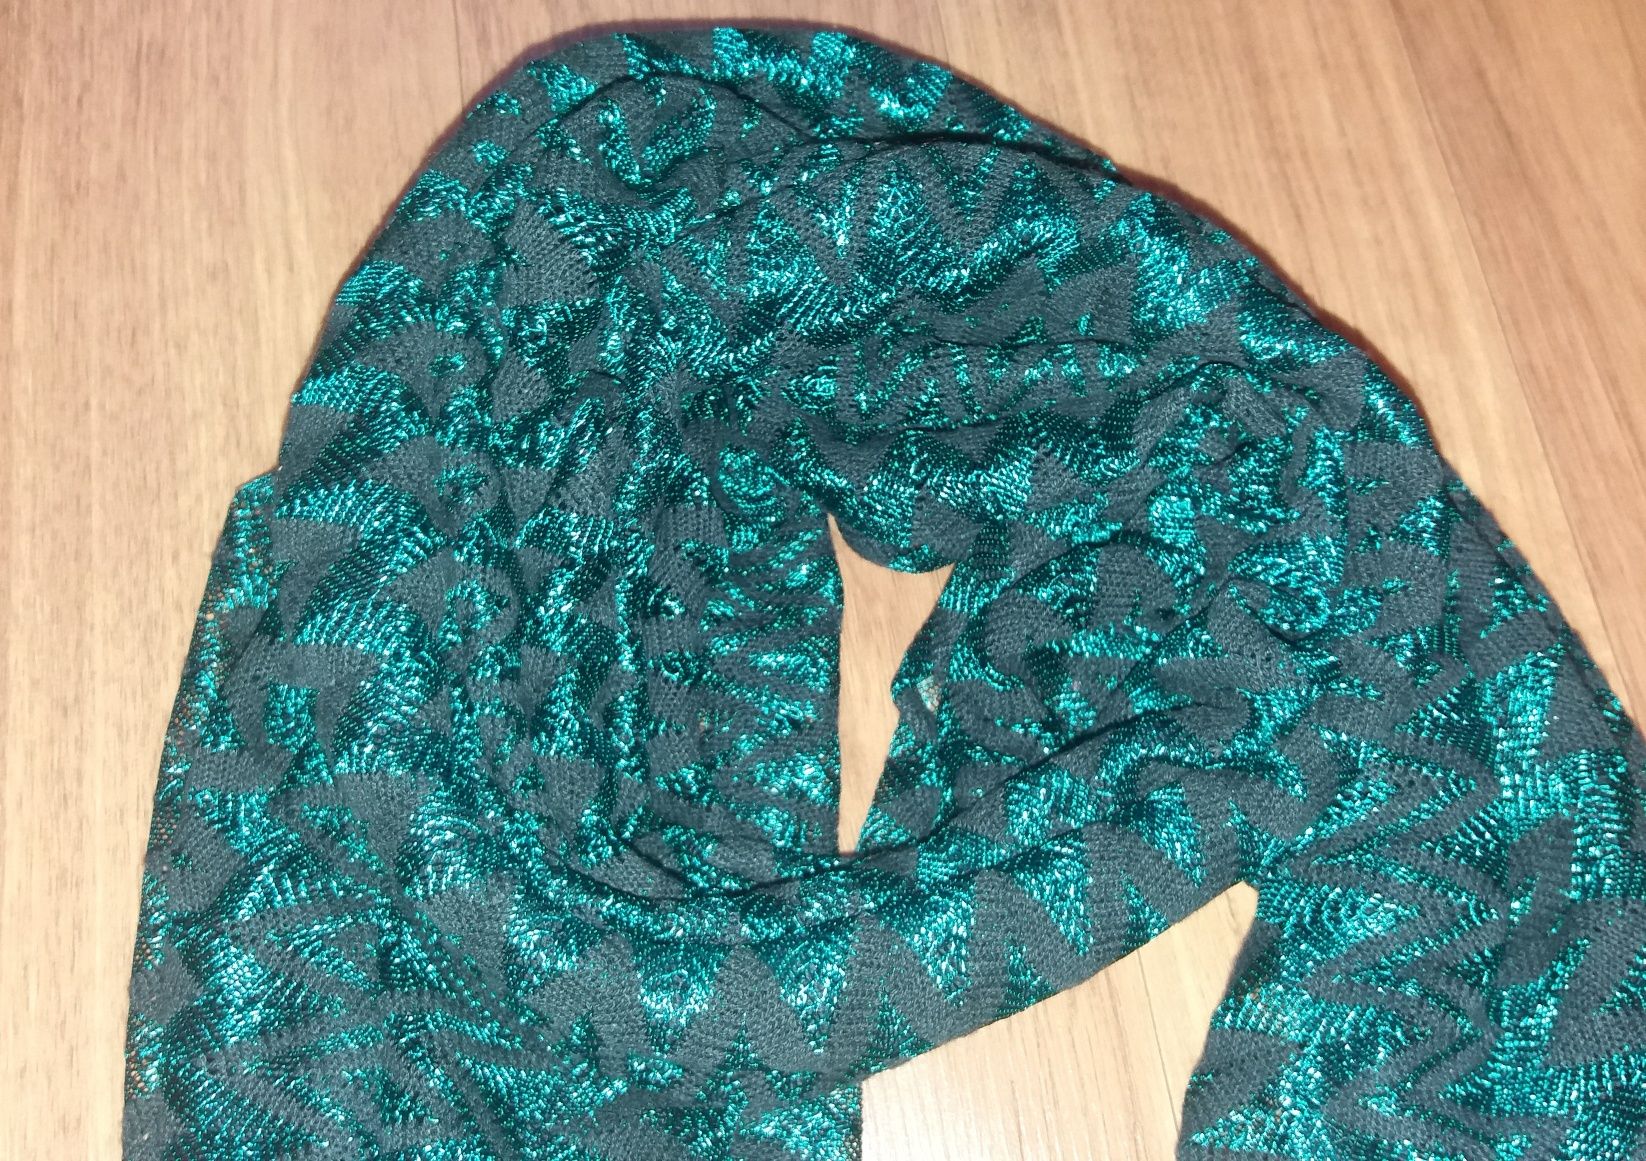 Новый шарф,шарфик,палантин,хомут, снуд, женский шарф, весенний шарф